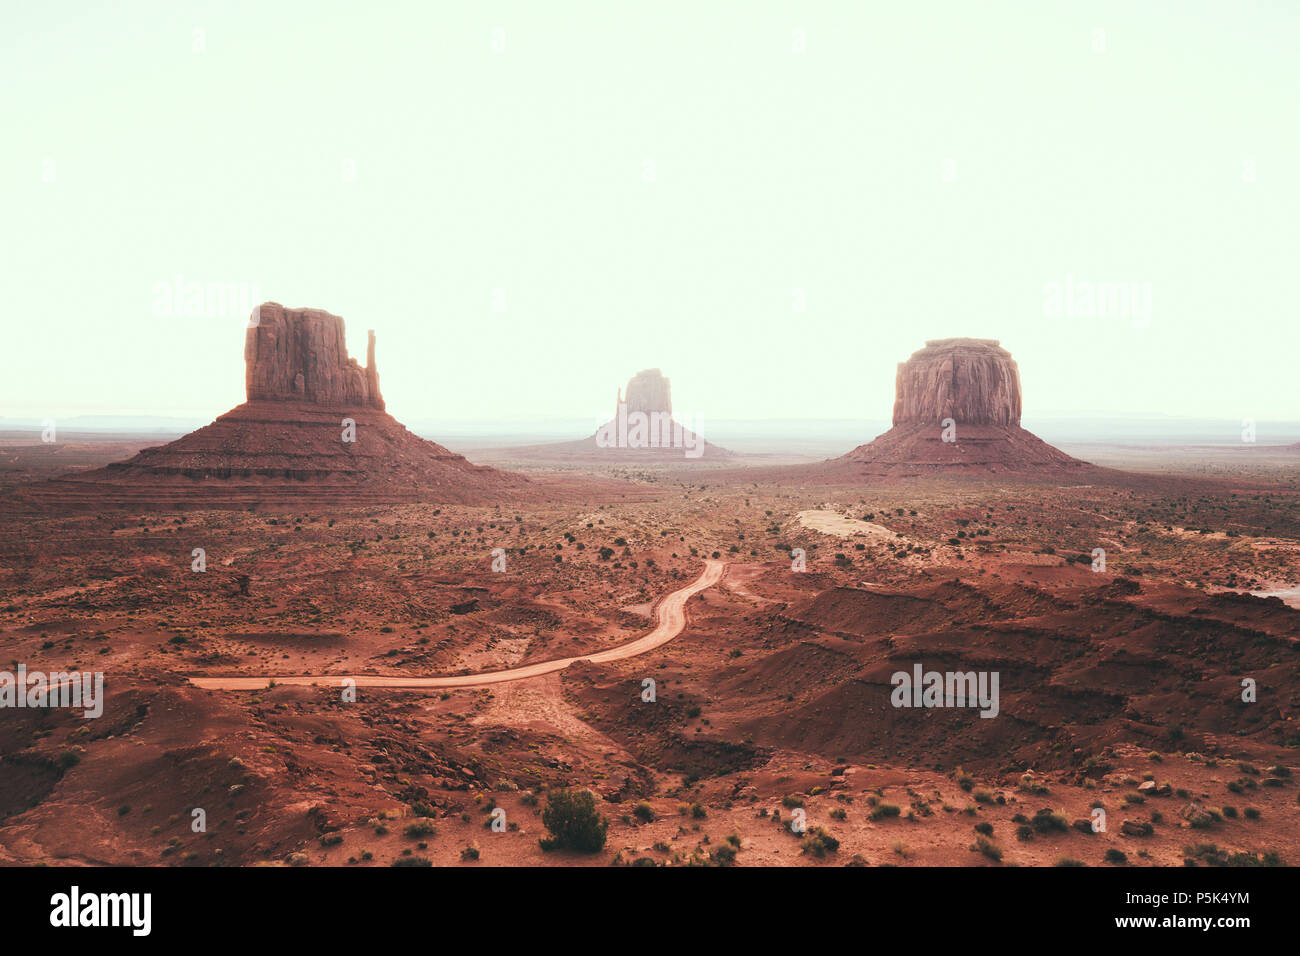 Visualizzazione classica di scenic Monument Valley con il famoso mezzoguanti e Merrick Butte in estate con retro vintage stile Instagram effetto filtro, Arizona Foto Stock